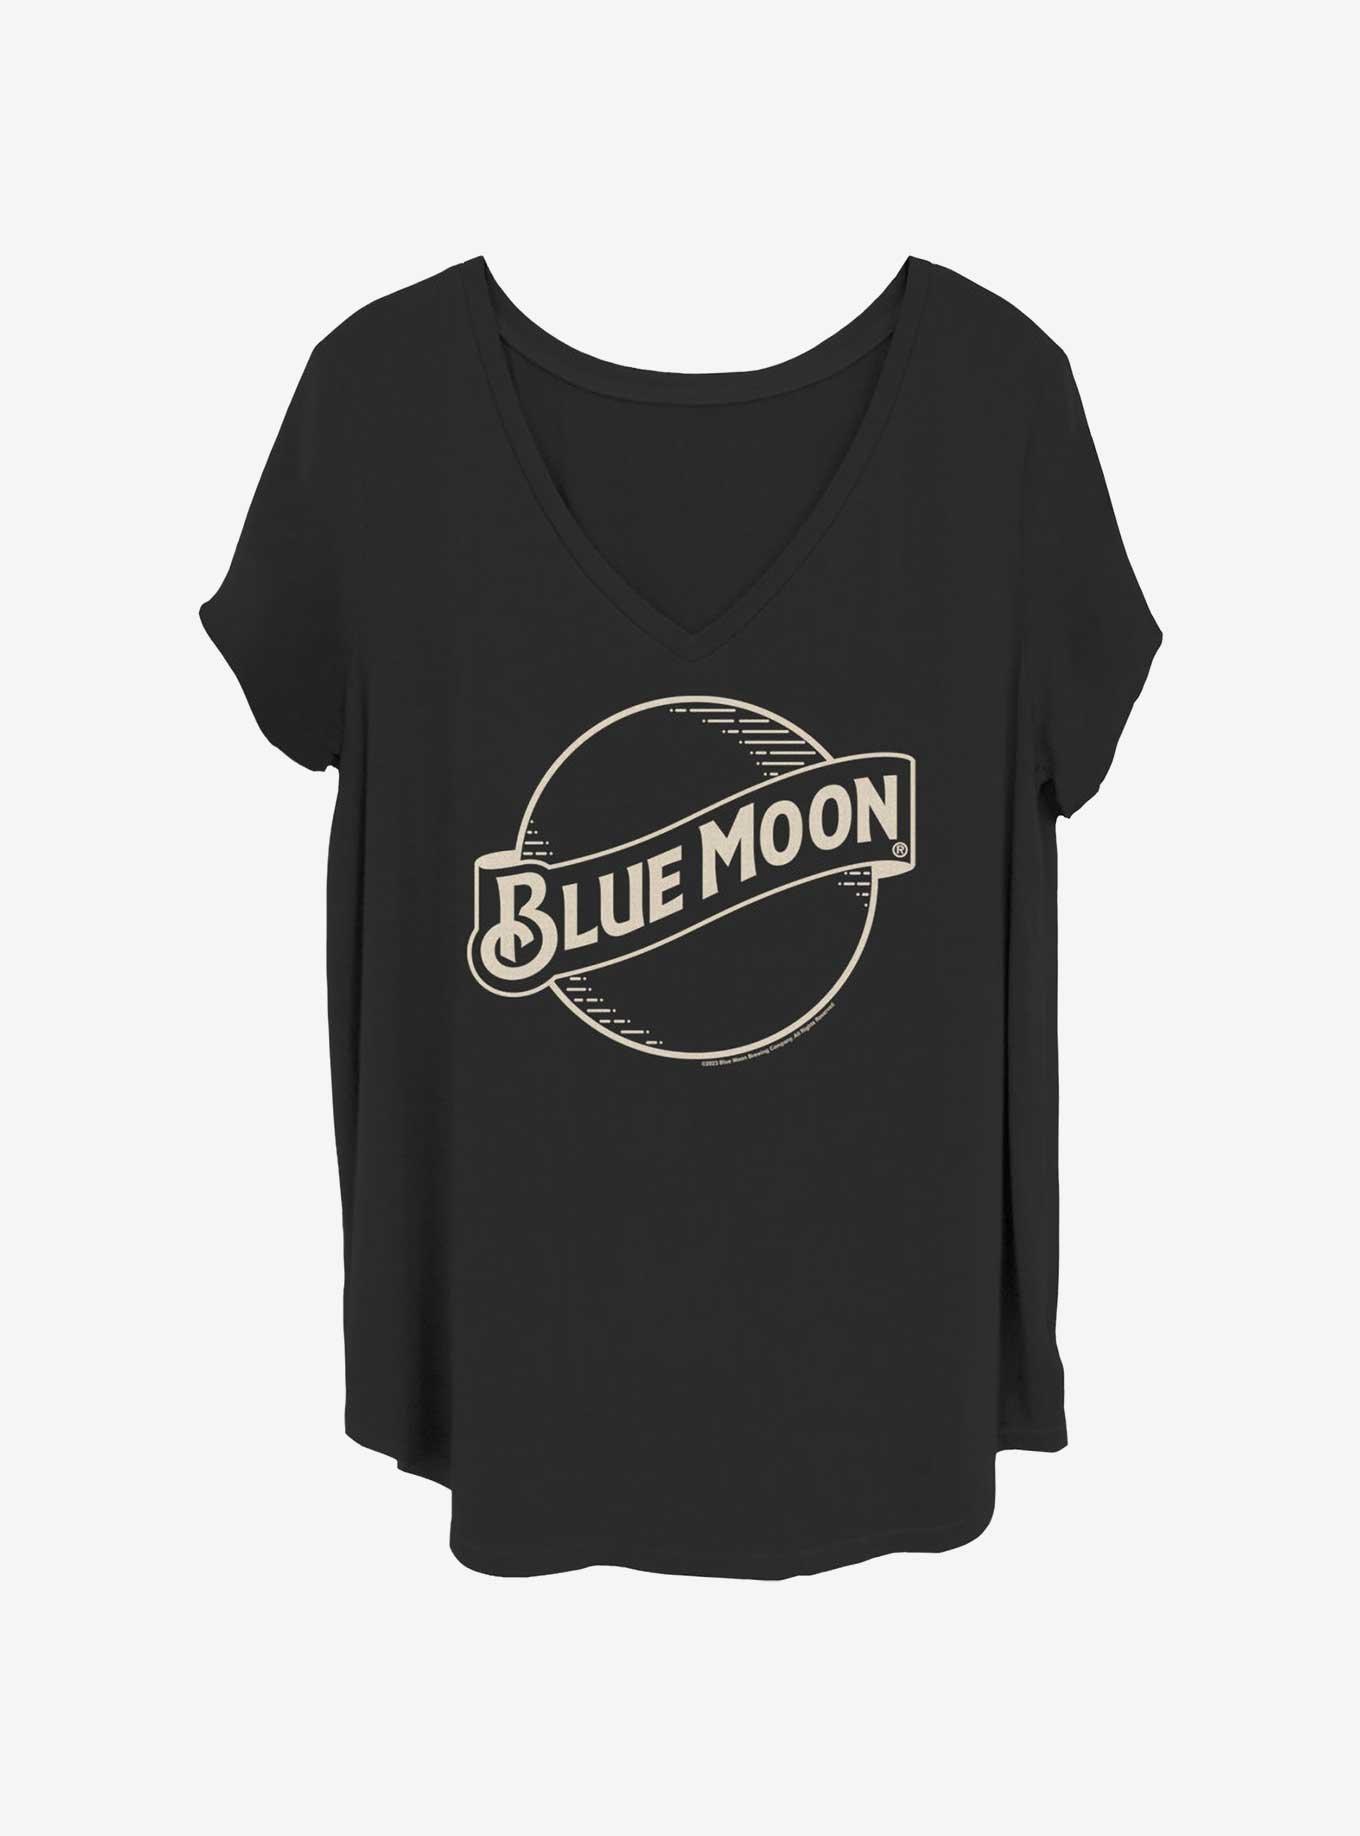 Coors Blue Moon Girls T-Shirt Plus